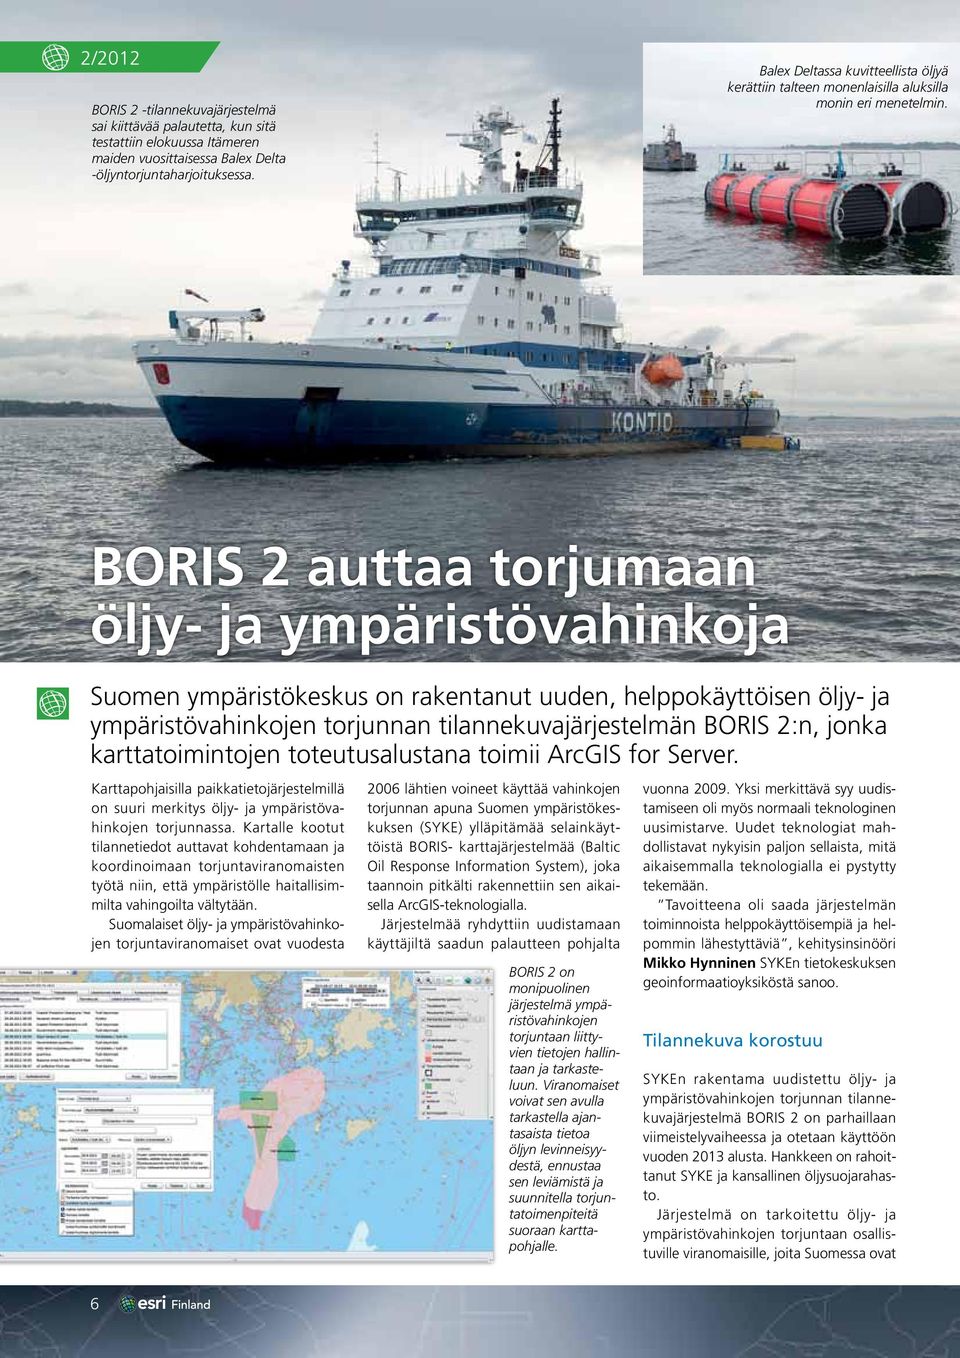 BORIS 2 auttaa torjumaan öljy- ja ympäristövahinkoja Suomen ympäristökeskus on rakentanut uuden, helppokäyttöisen öljy- ja ympäristövahinkojen torjunnan tilannekuvajärjestelmän BORIS 2:n, jonka